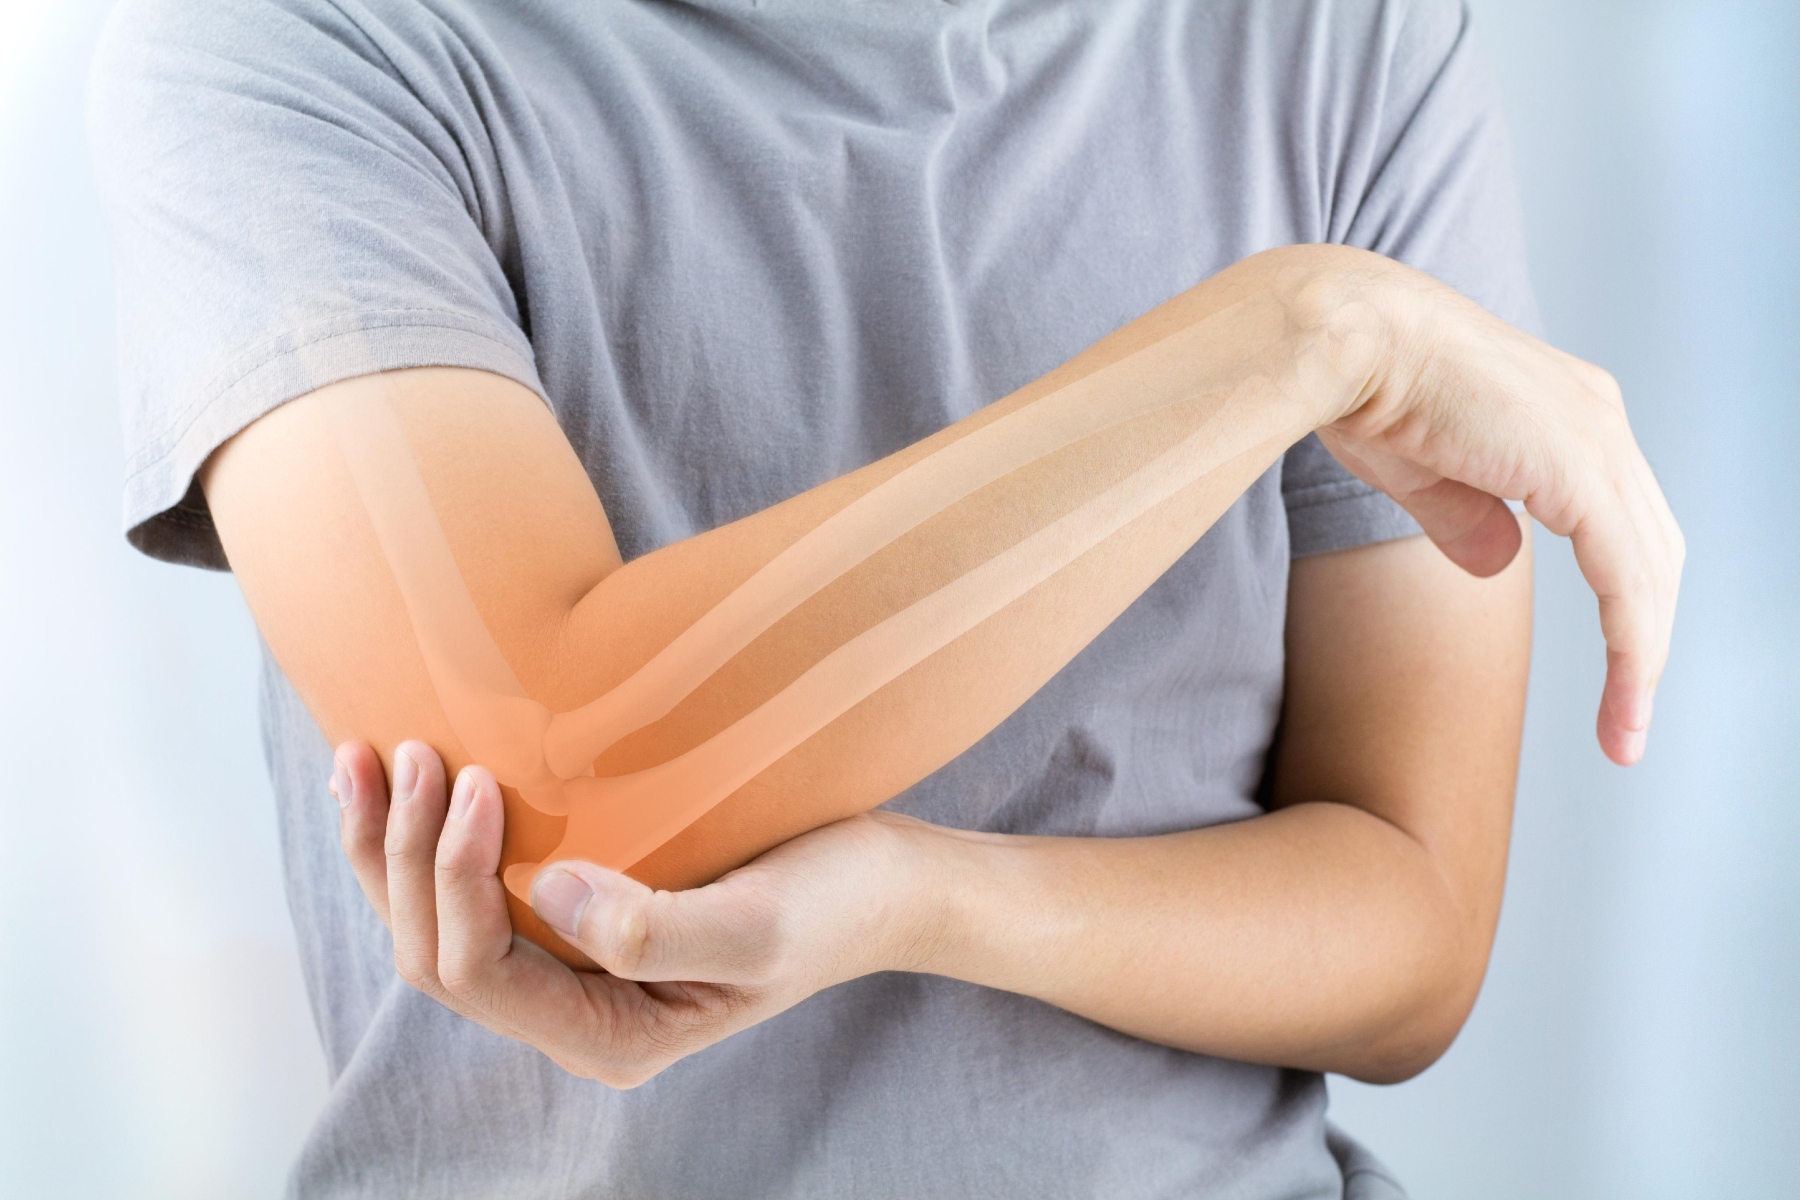 Εγχείρηση αγκώνας: Τι πρέπει οπωσδήποτε να ξέρουμε για την επέμβαση σε αγκώνες;